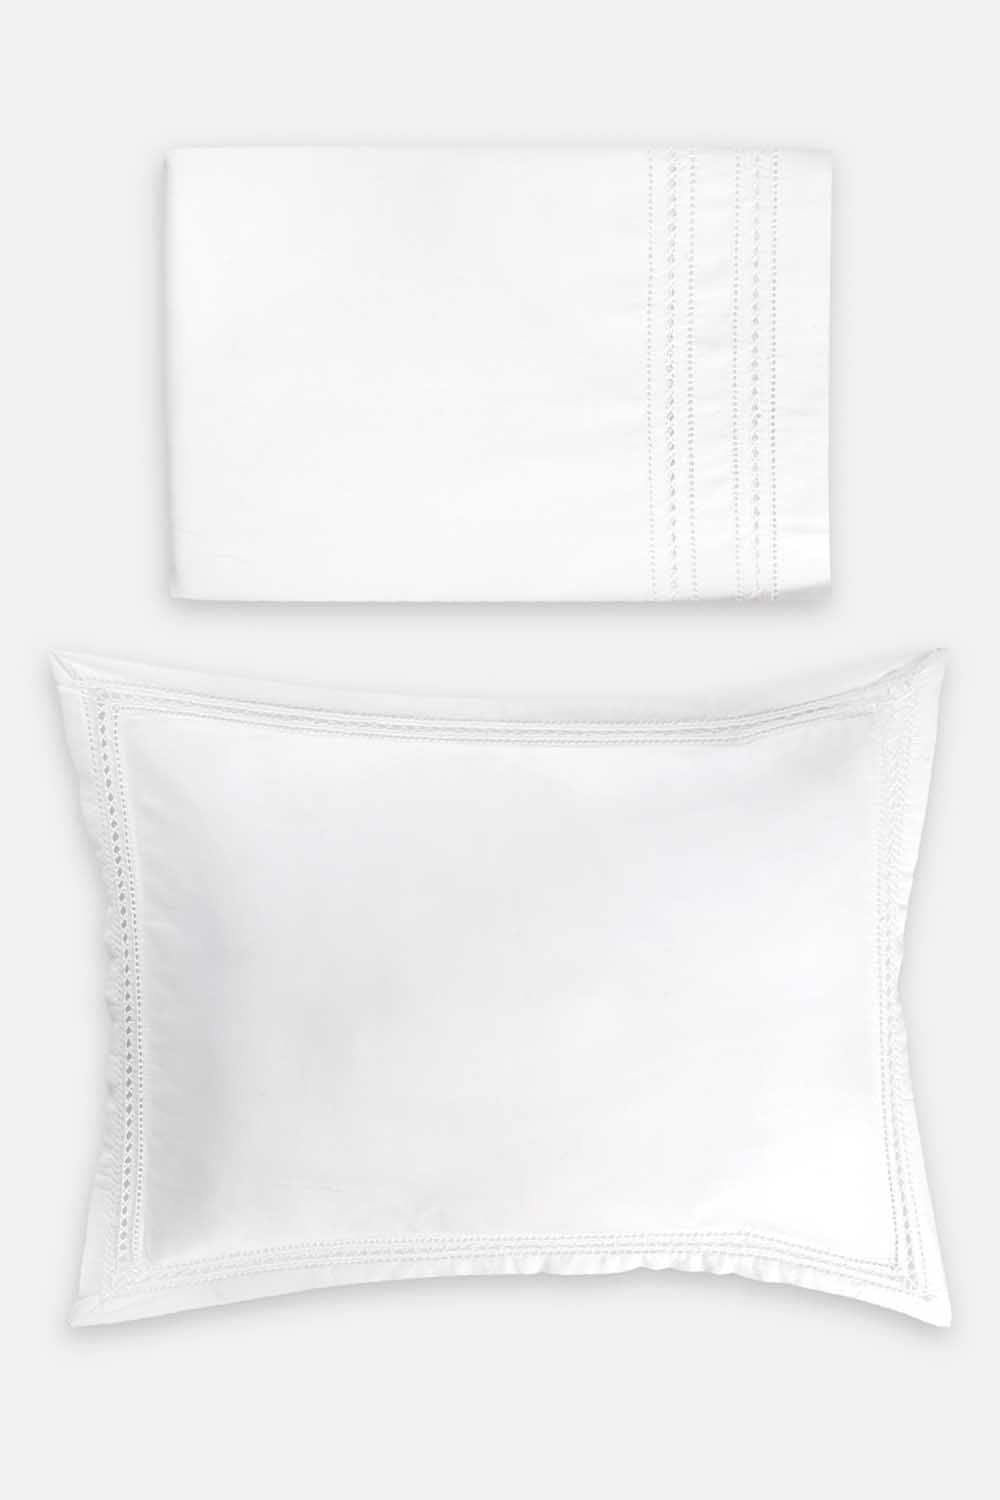 Top Sheet & Pillow - Drawan Thread